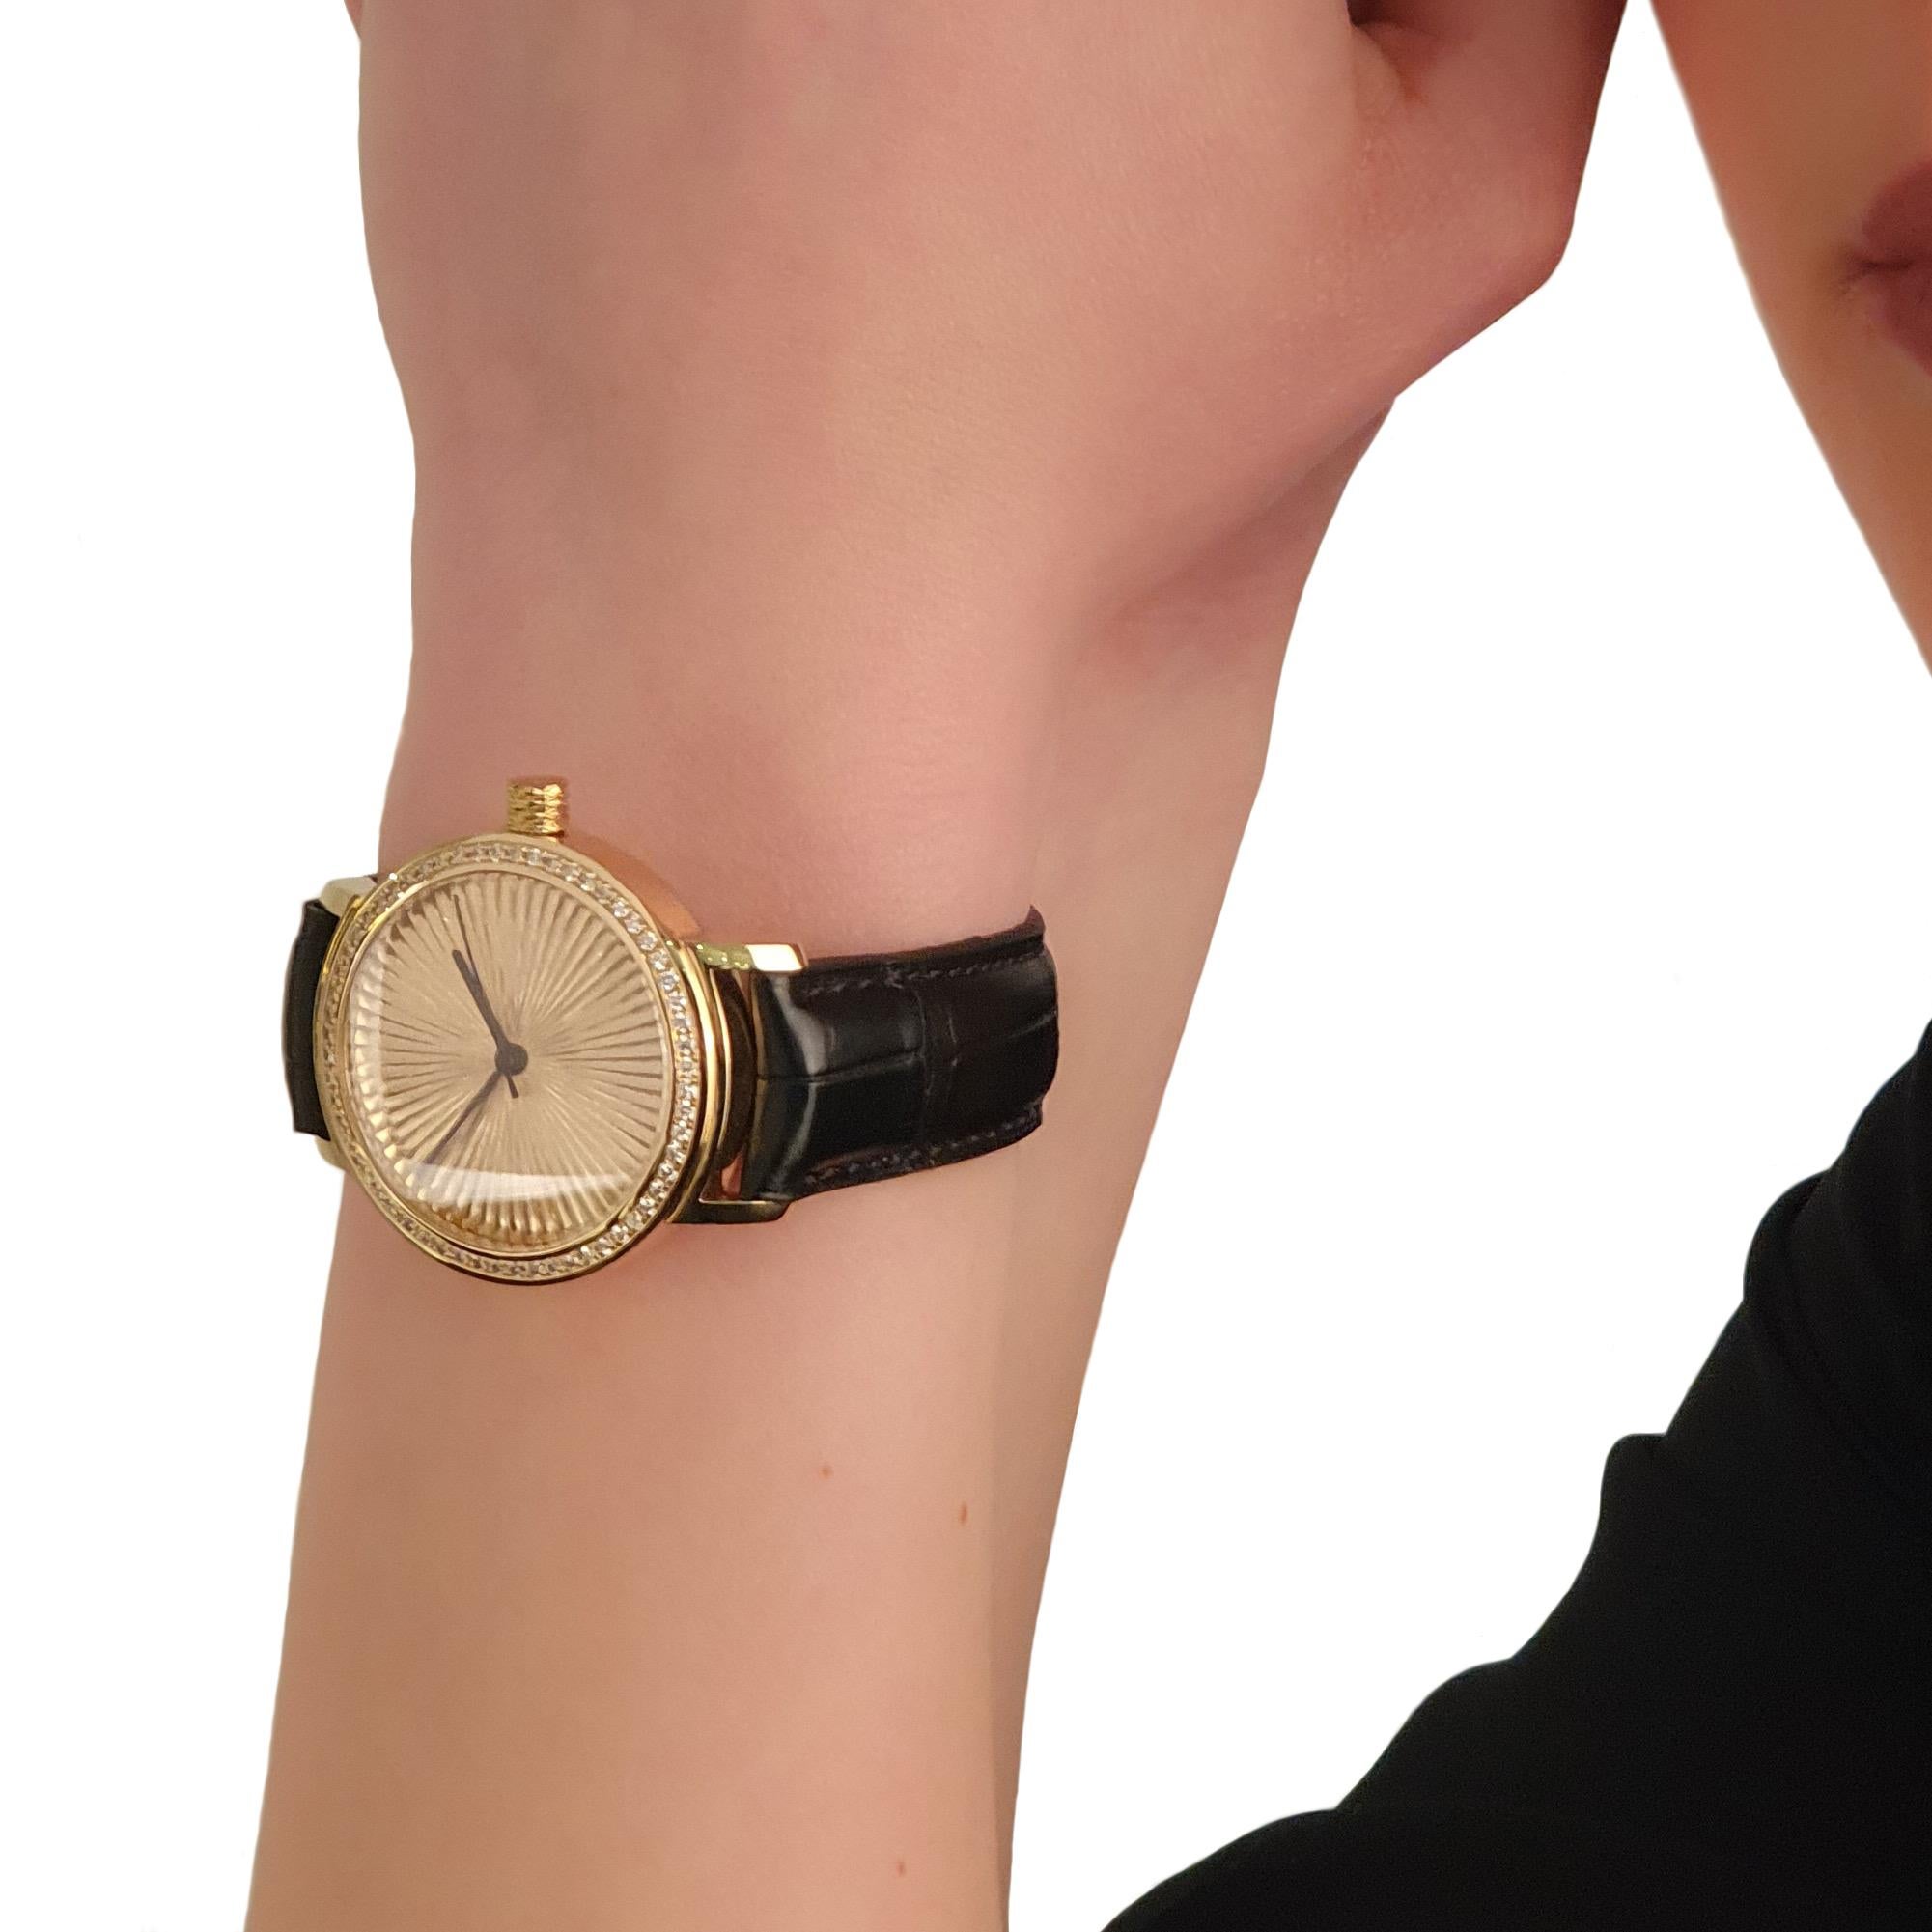 Nº2 avec 60 diamants taille brillant Montre-bracelet en or jaune  Bijoux Cober

Il s'agit d'une montre Cober Nº2 - Edition limitée.
Voici la Cober Nº2 - une montre en édition limitée conçue pour faire une déclaration. Ce garde-temps exquis se